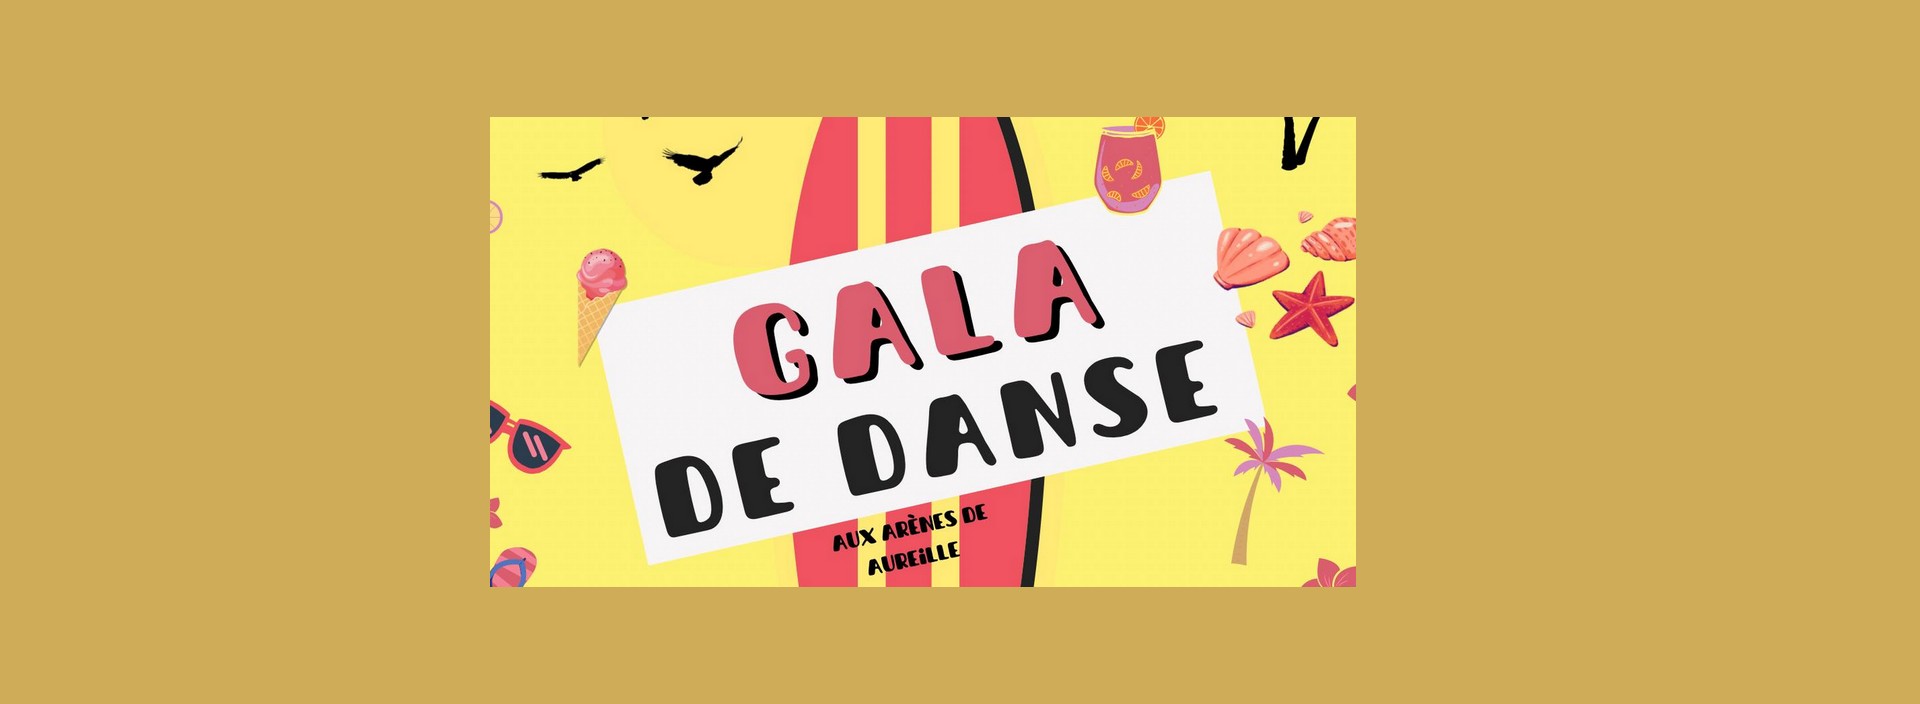 Gala de danse de l'Association Aureilloise de Danses